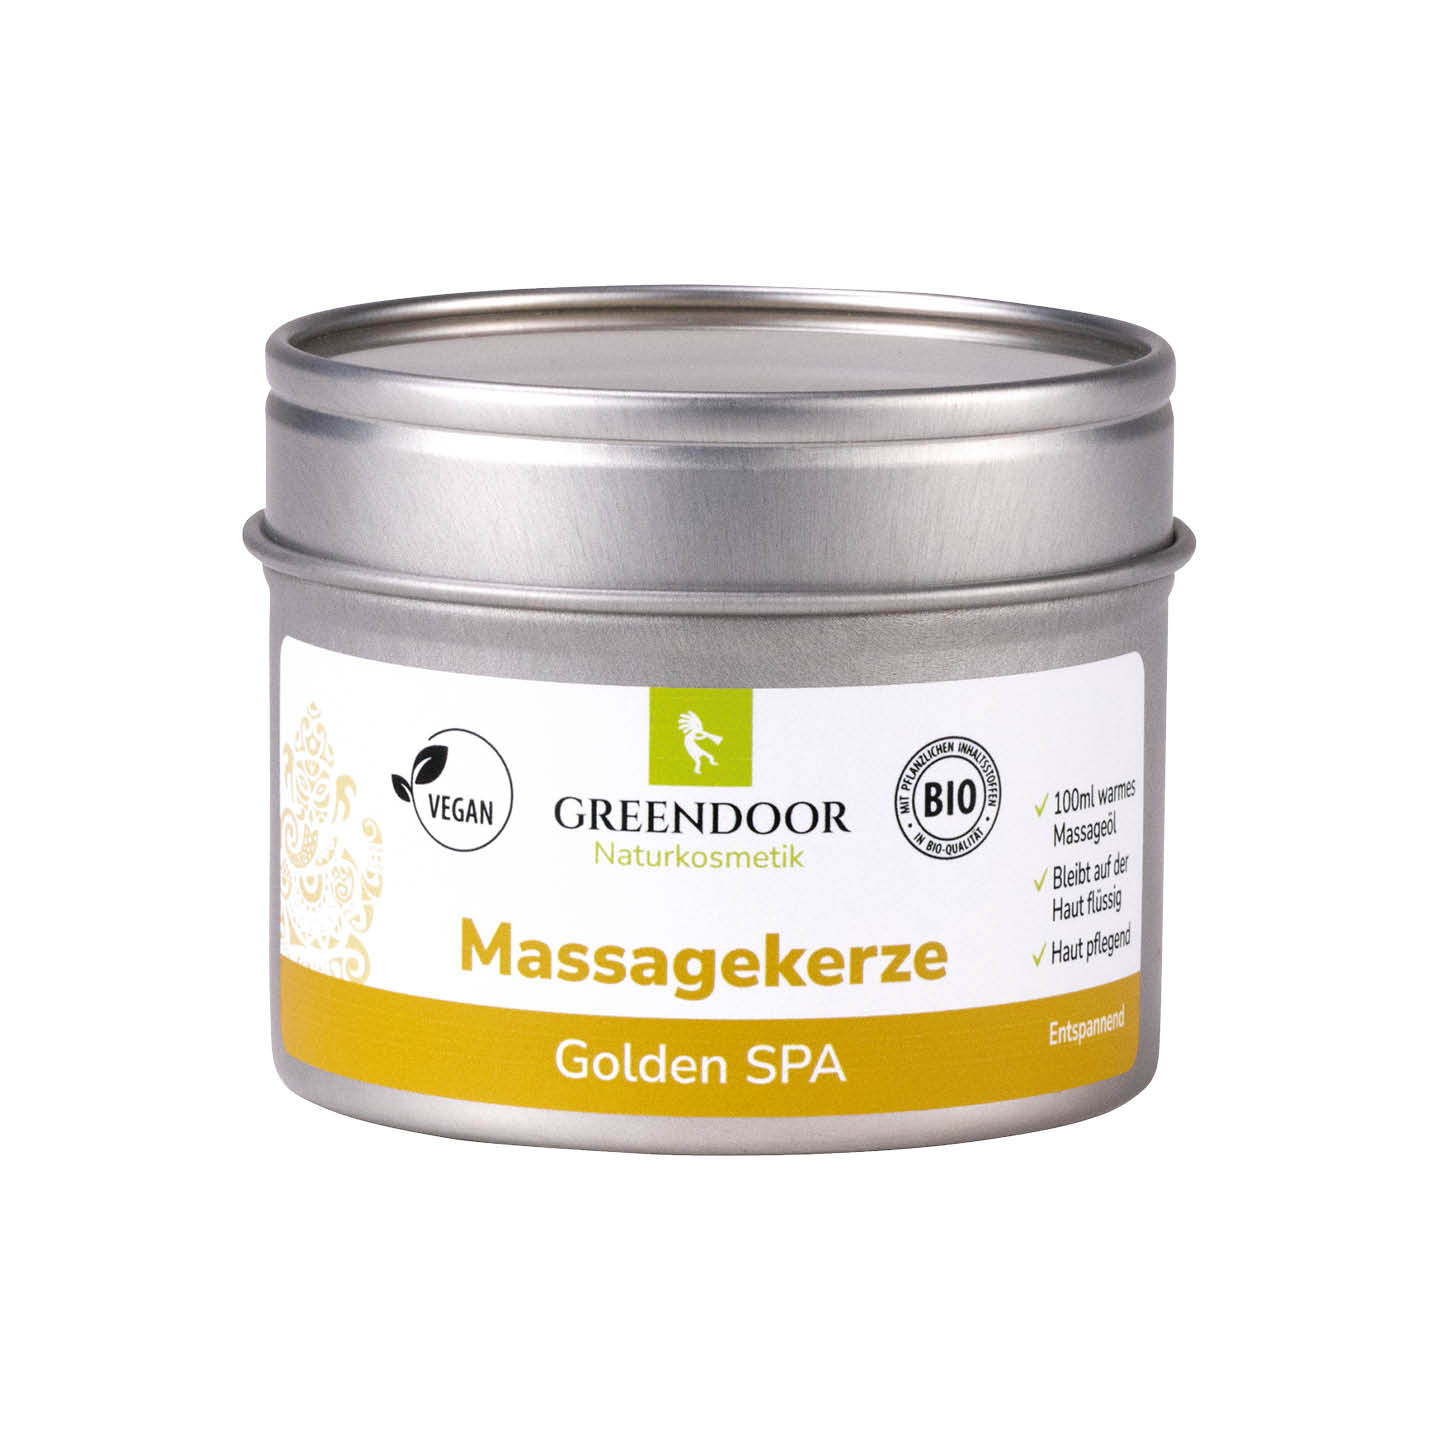 Massagekerze Golden SPA 100ml, veganes Massagevergnügen ohne Ende